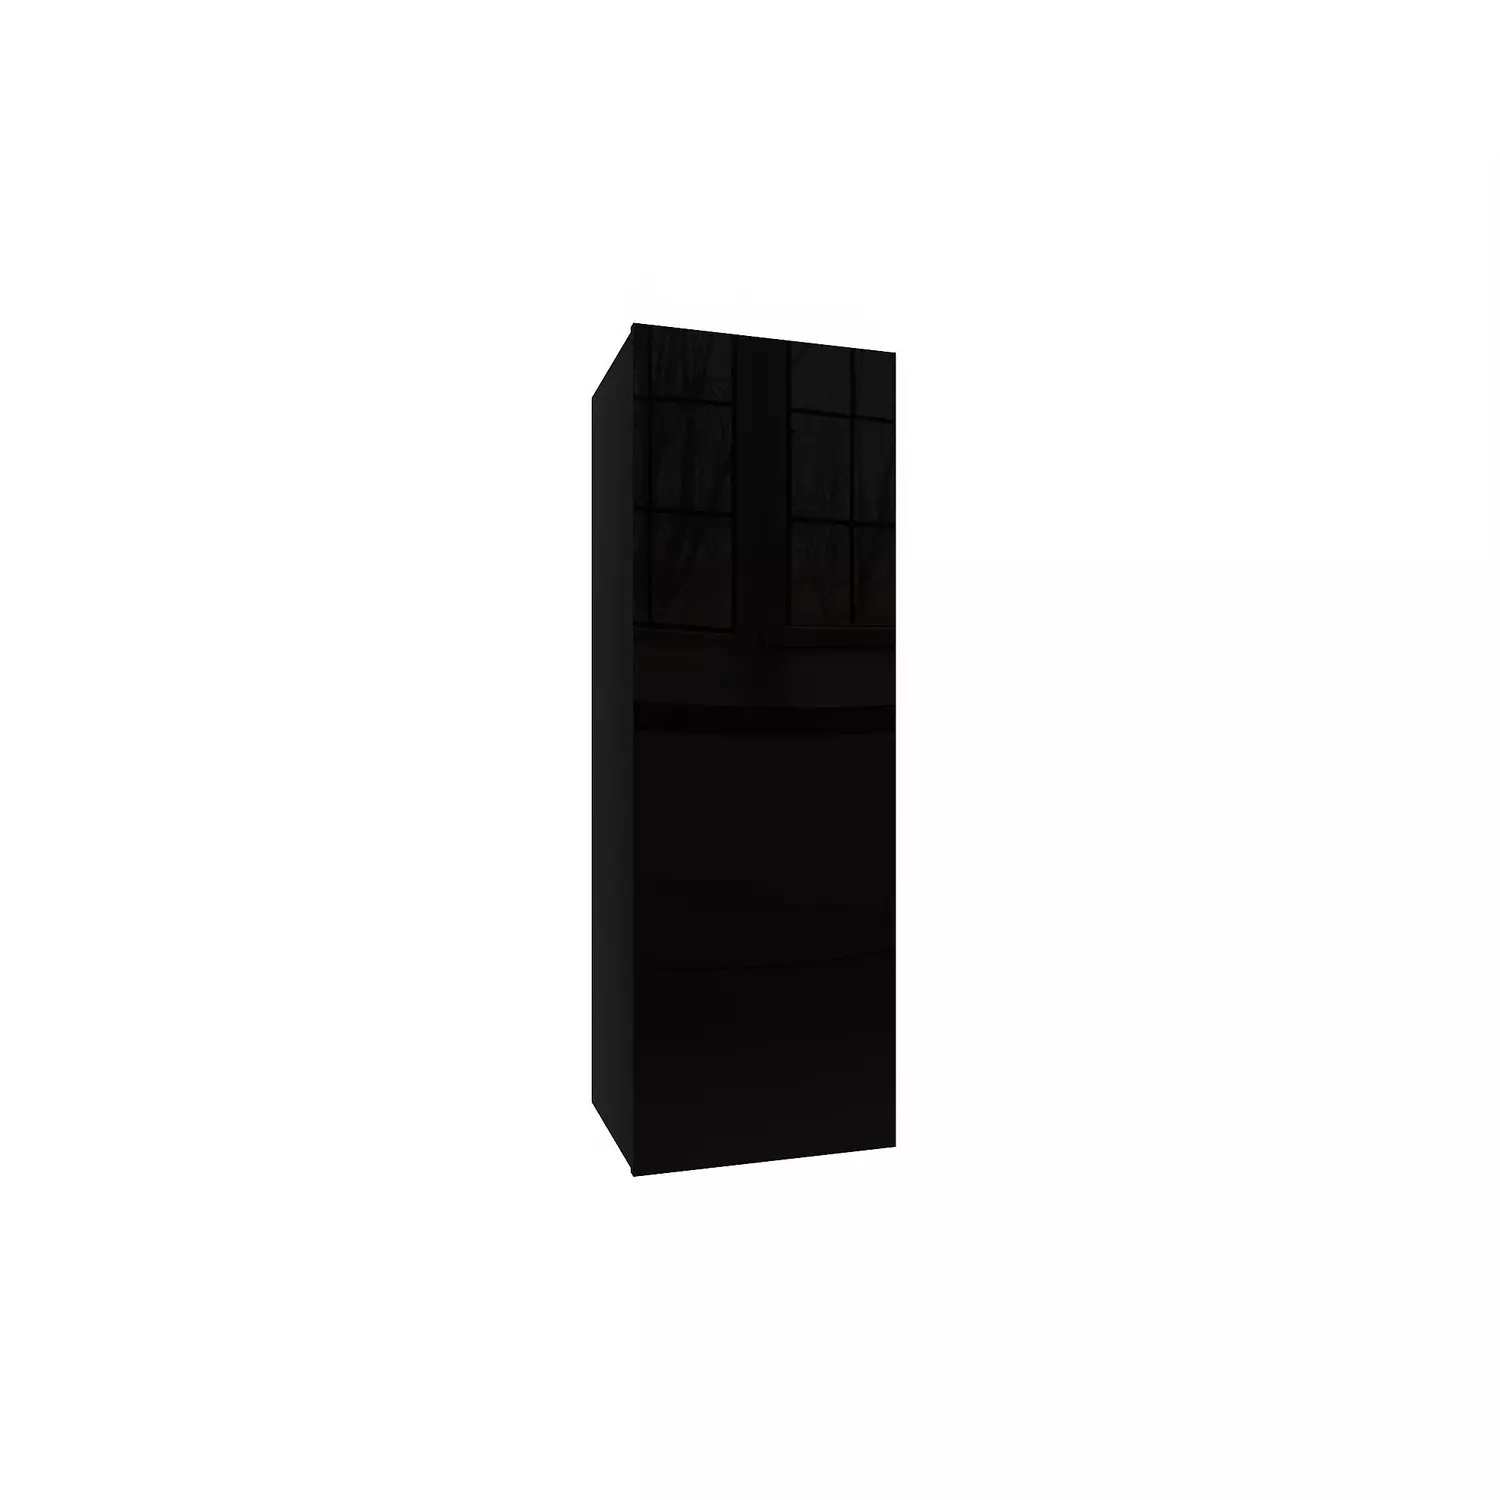 IZUMI 22 BL magasfényű fekete/fekete fali polcos szekrény 105 cm